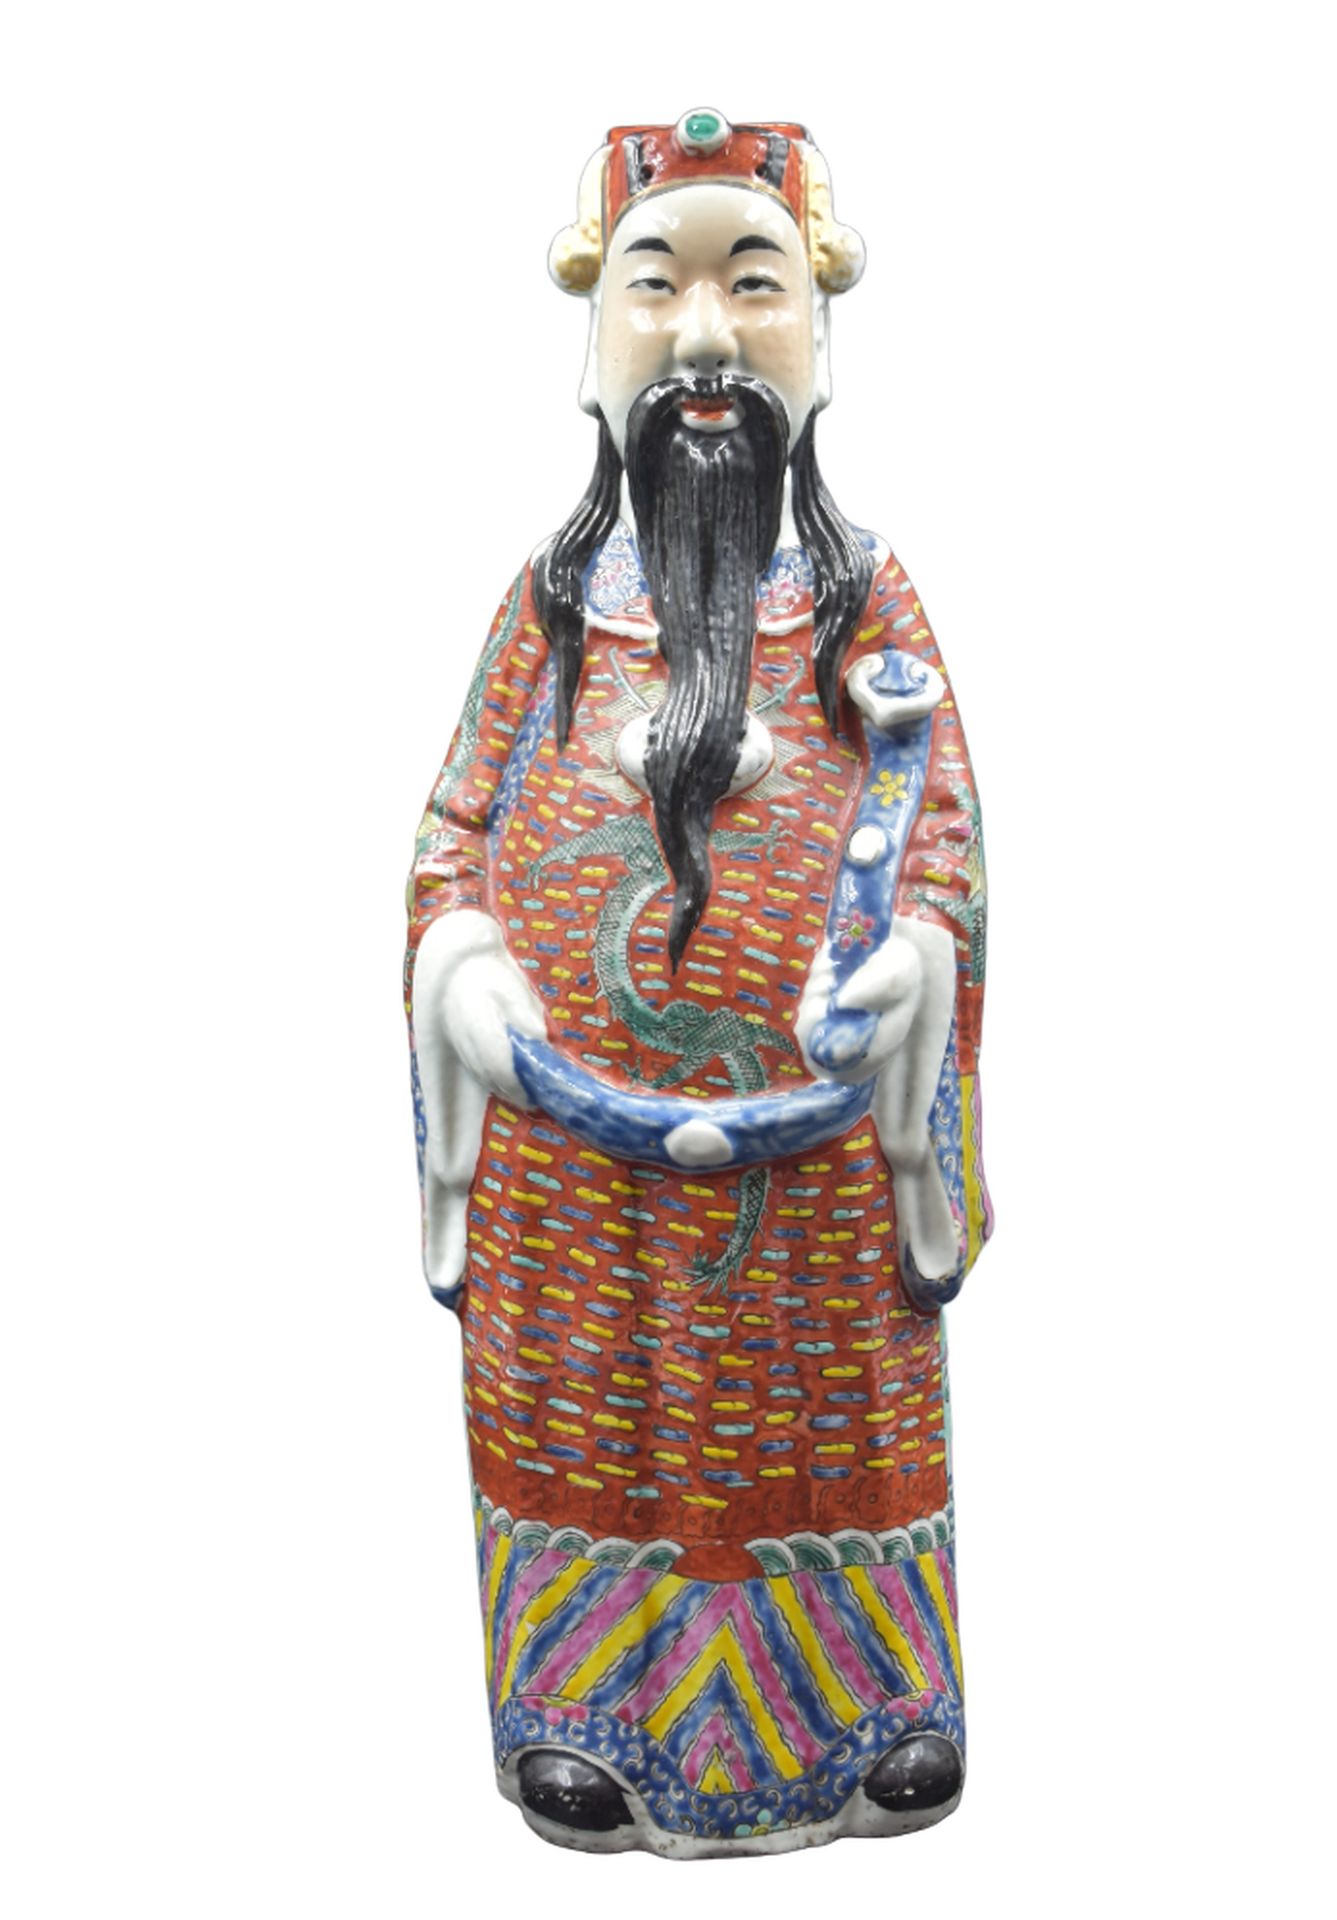 Null 中国的瓷器圣手。高度：48厘米。 

NL：在Chinees porselein的Wijze人。高度：48厘米。